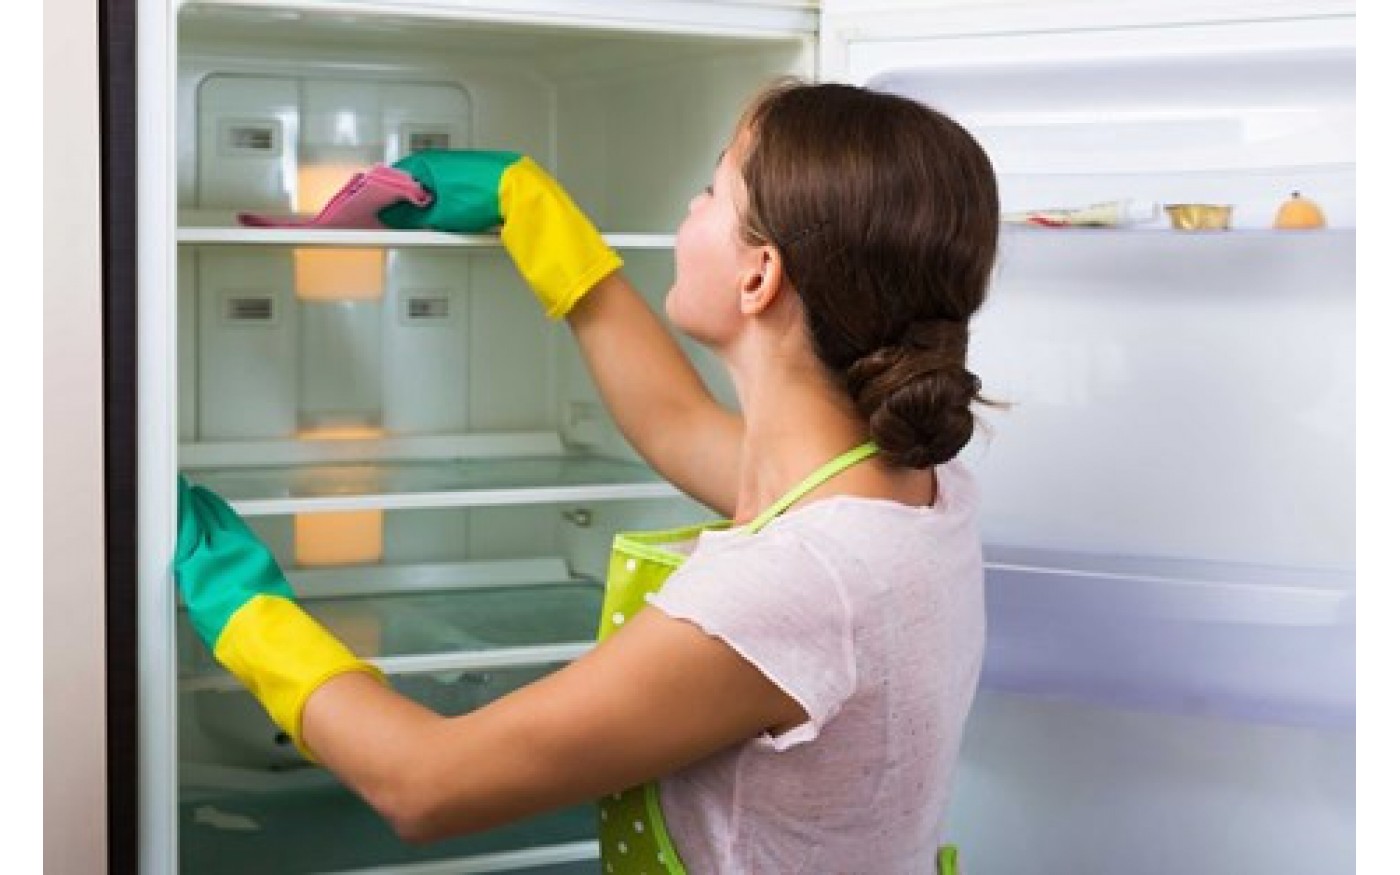 Vệ sinh tủ lạnh thường xuyên